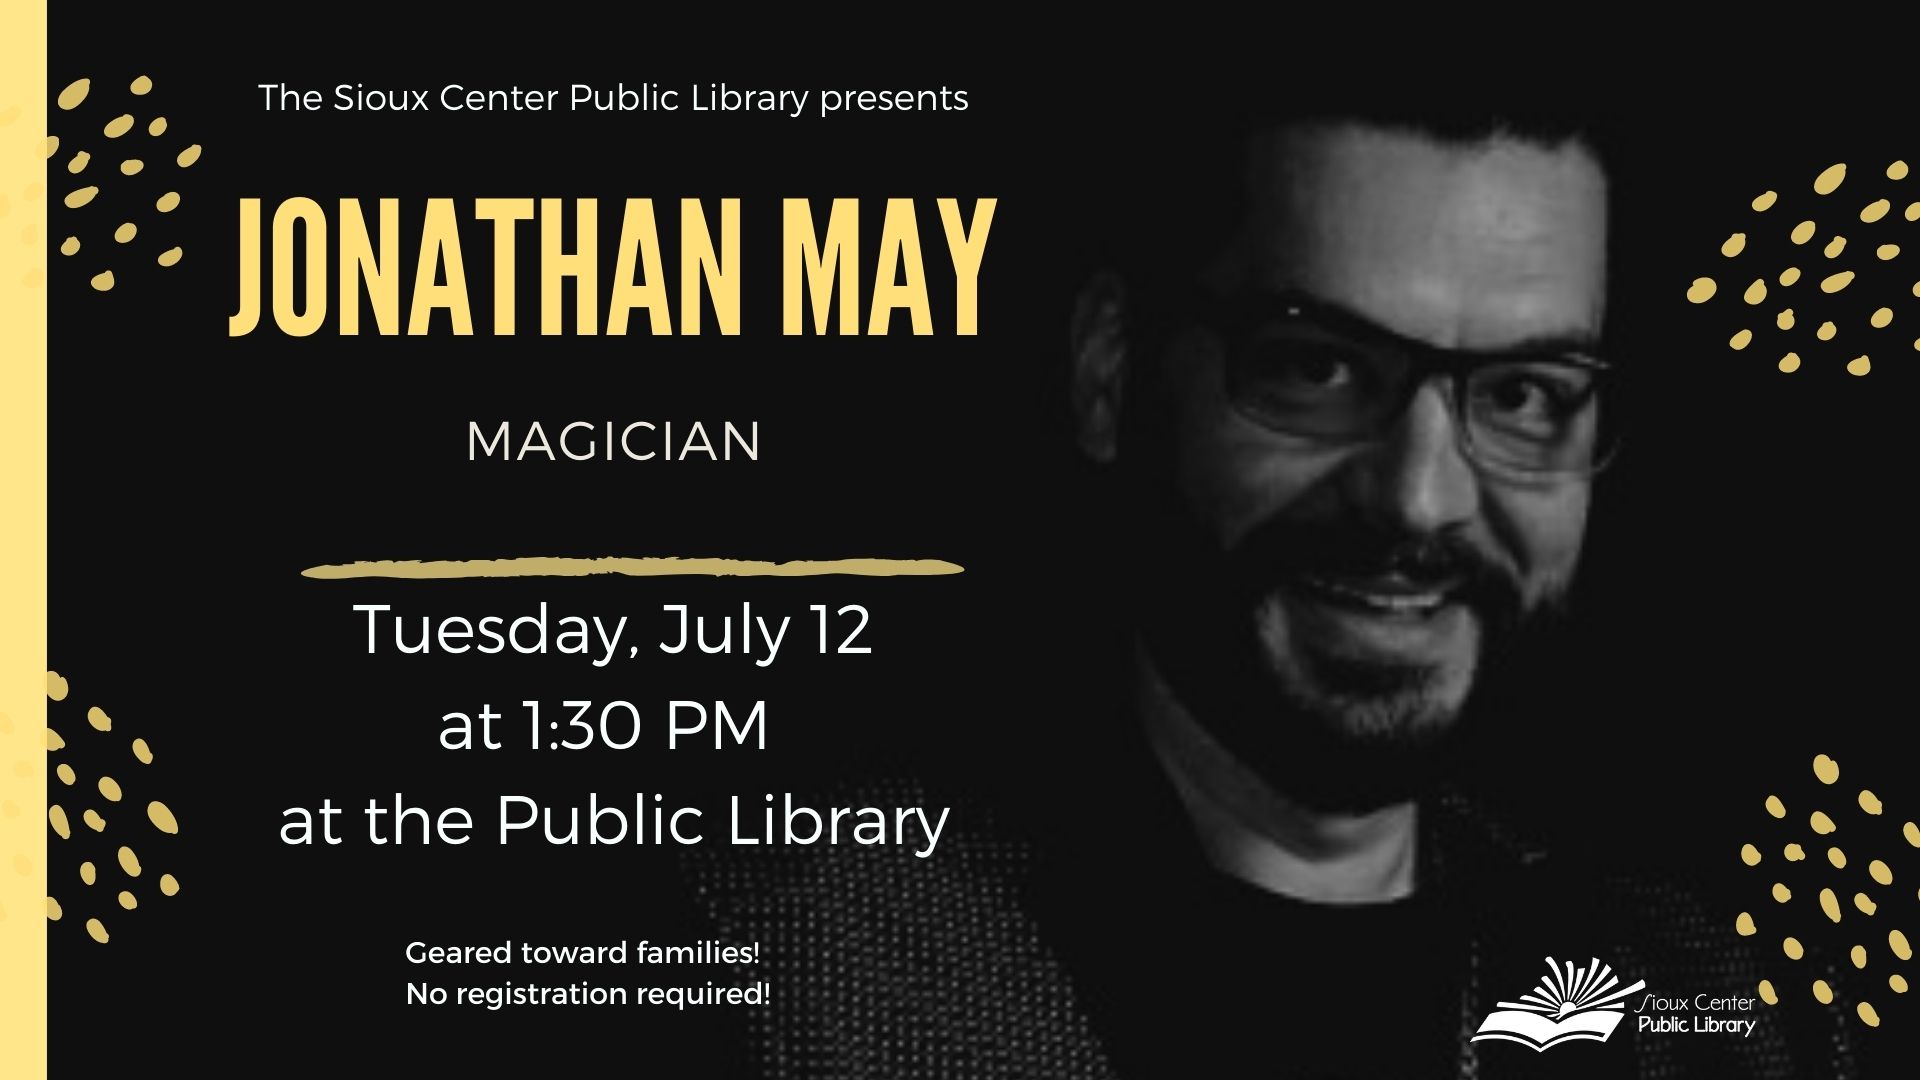 Magician Jonathan May